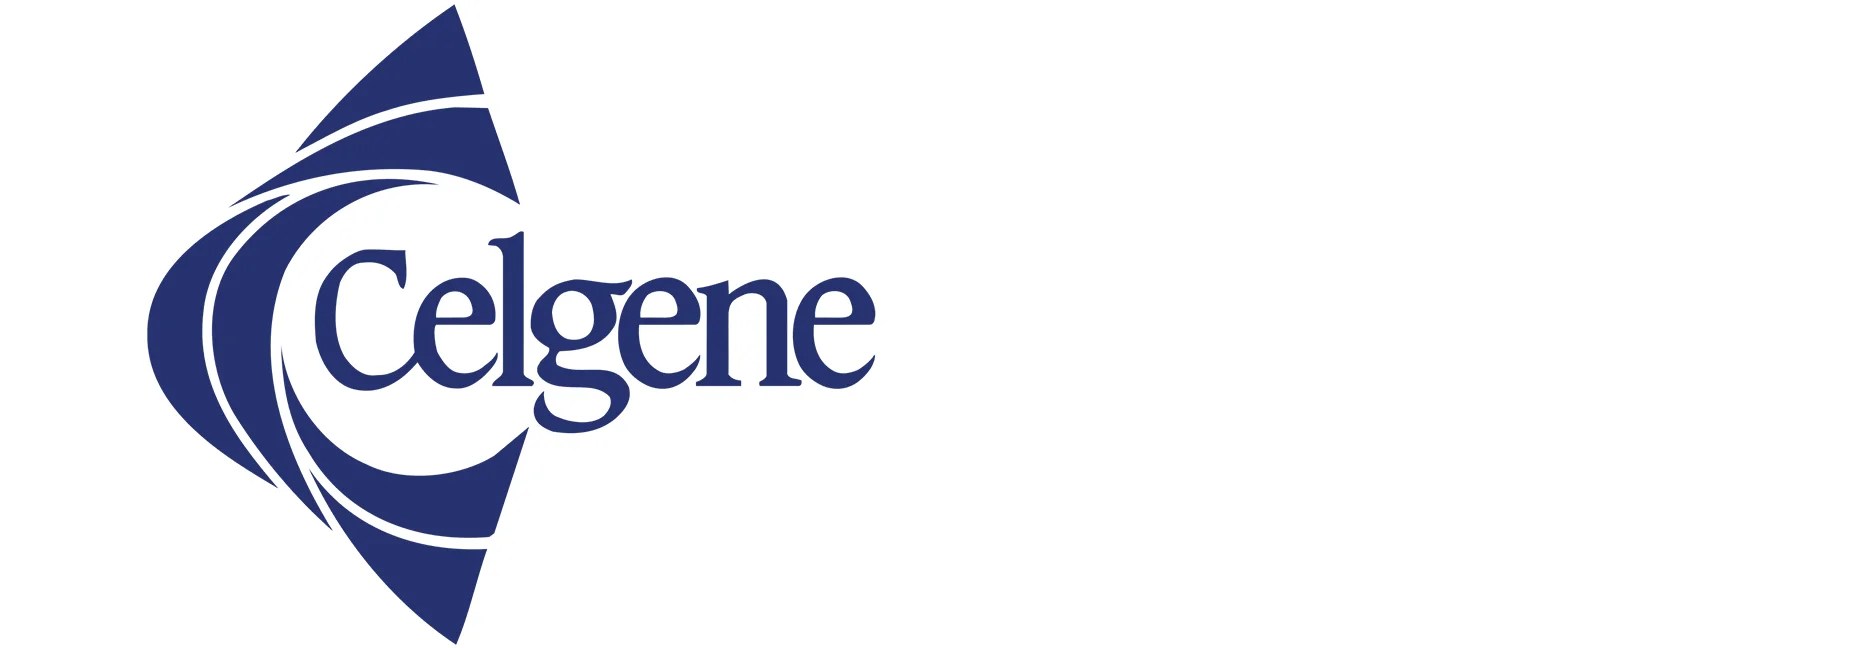 Logo - Celgene